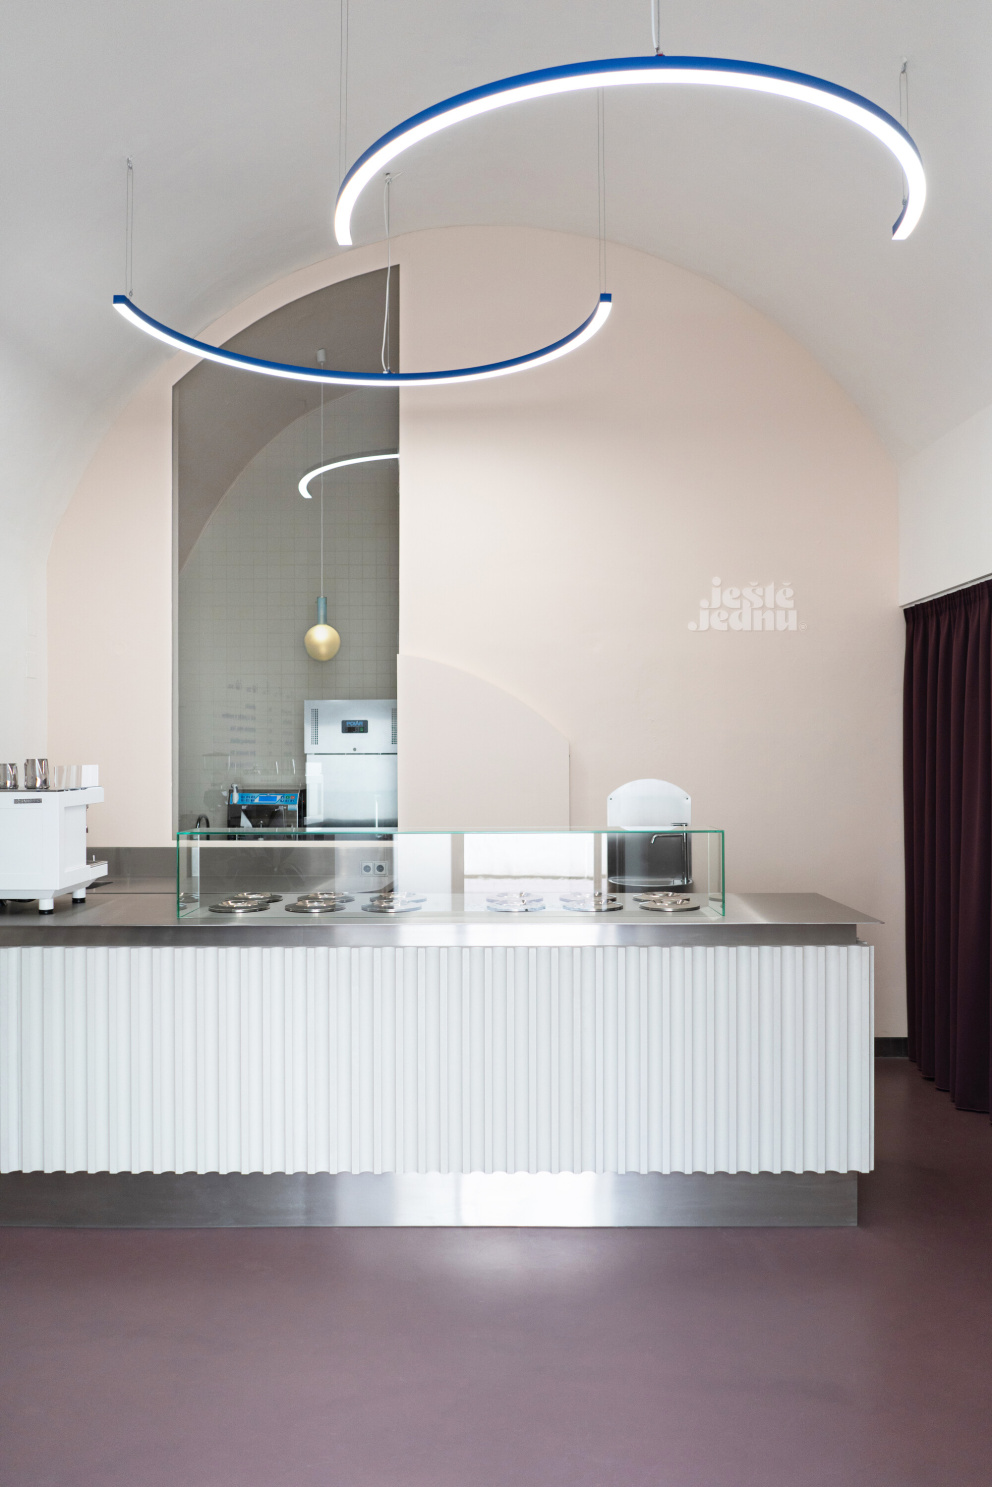 V centru Brna navrhla stylovou zmrzlinárnu, která pracuje s historií místa